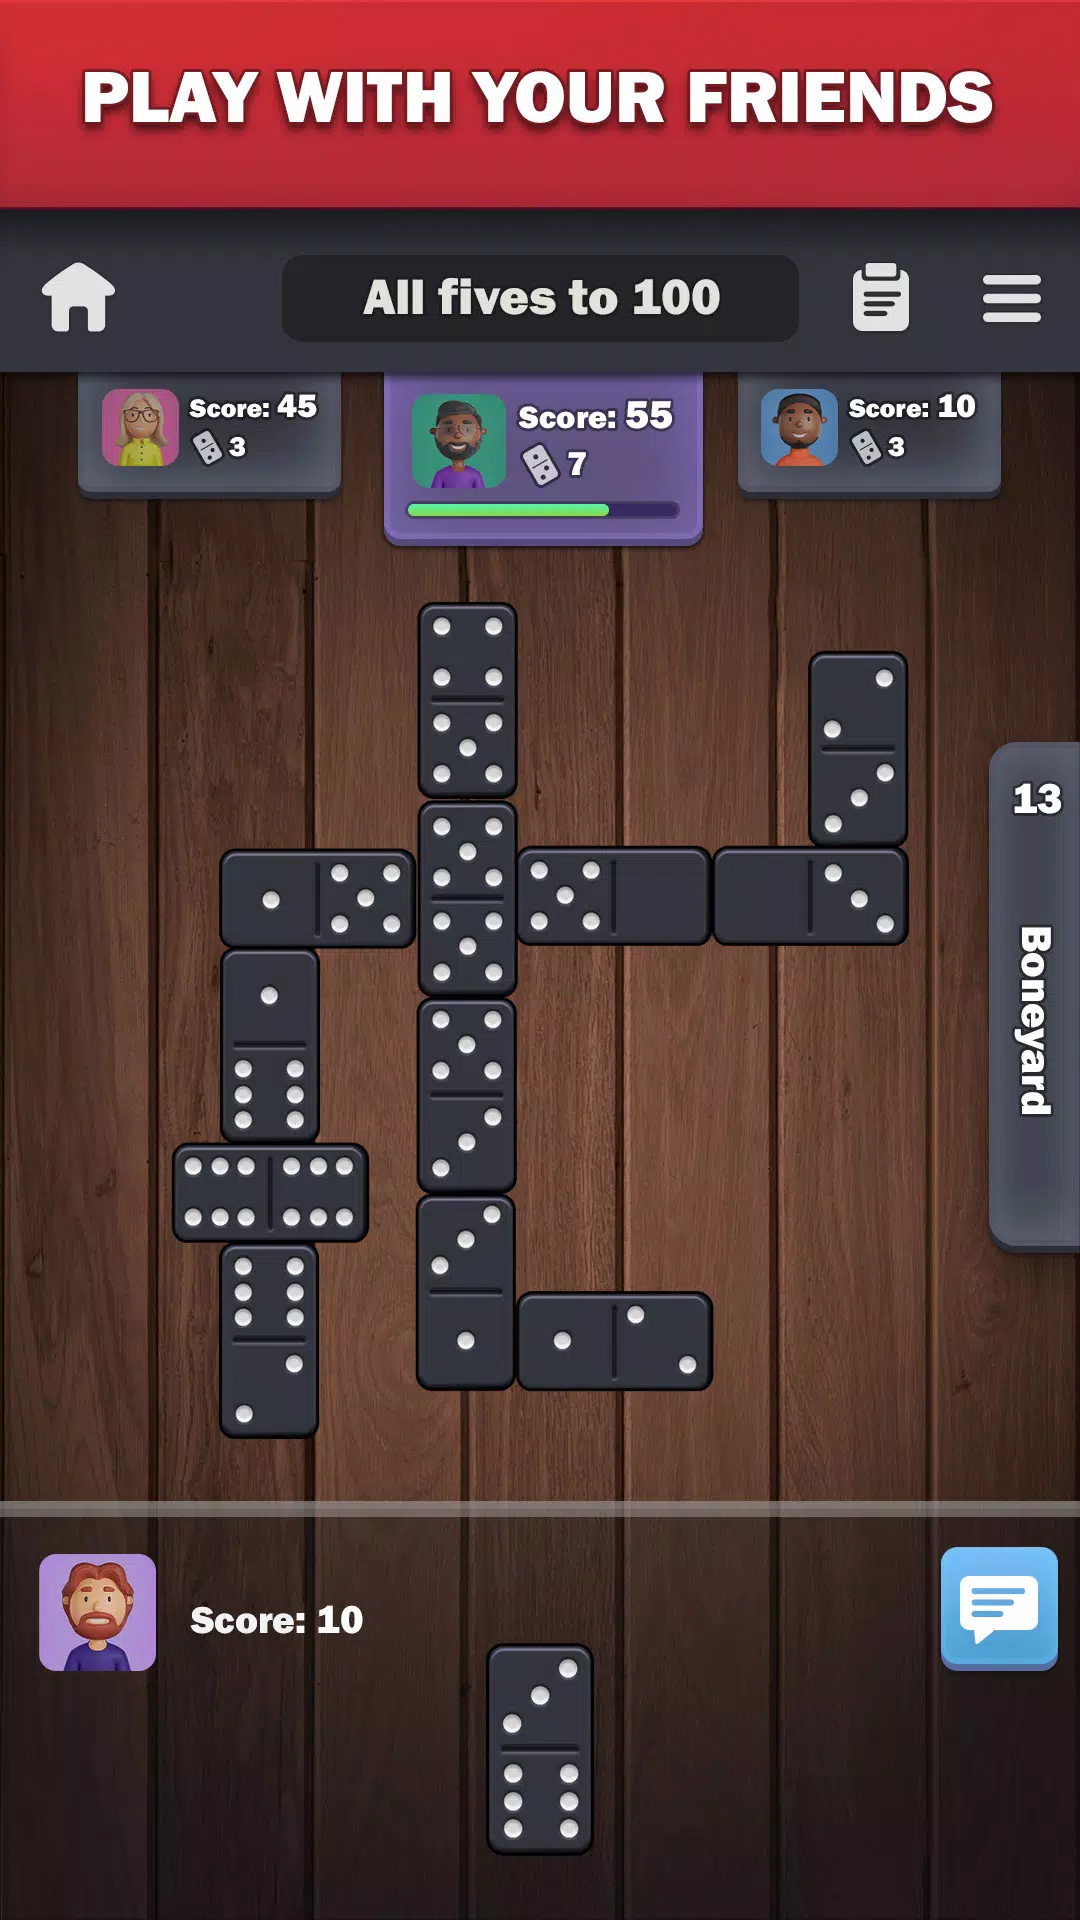 Domino-Truco Bingo Plinko [HACK_MOD] [Features Apk + iOS] v1.0.1